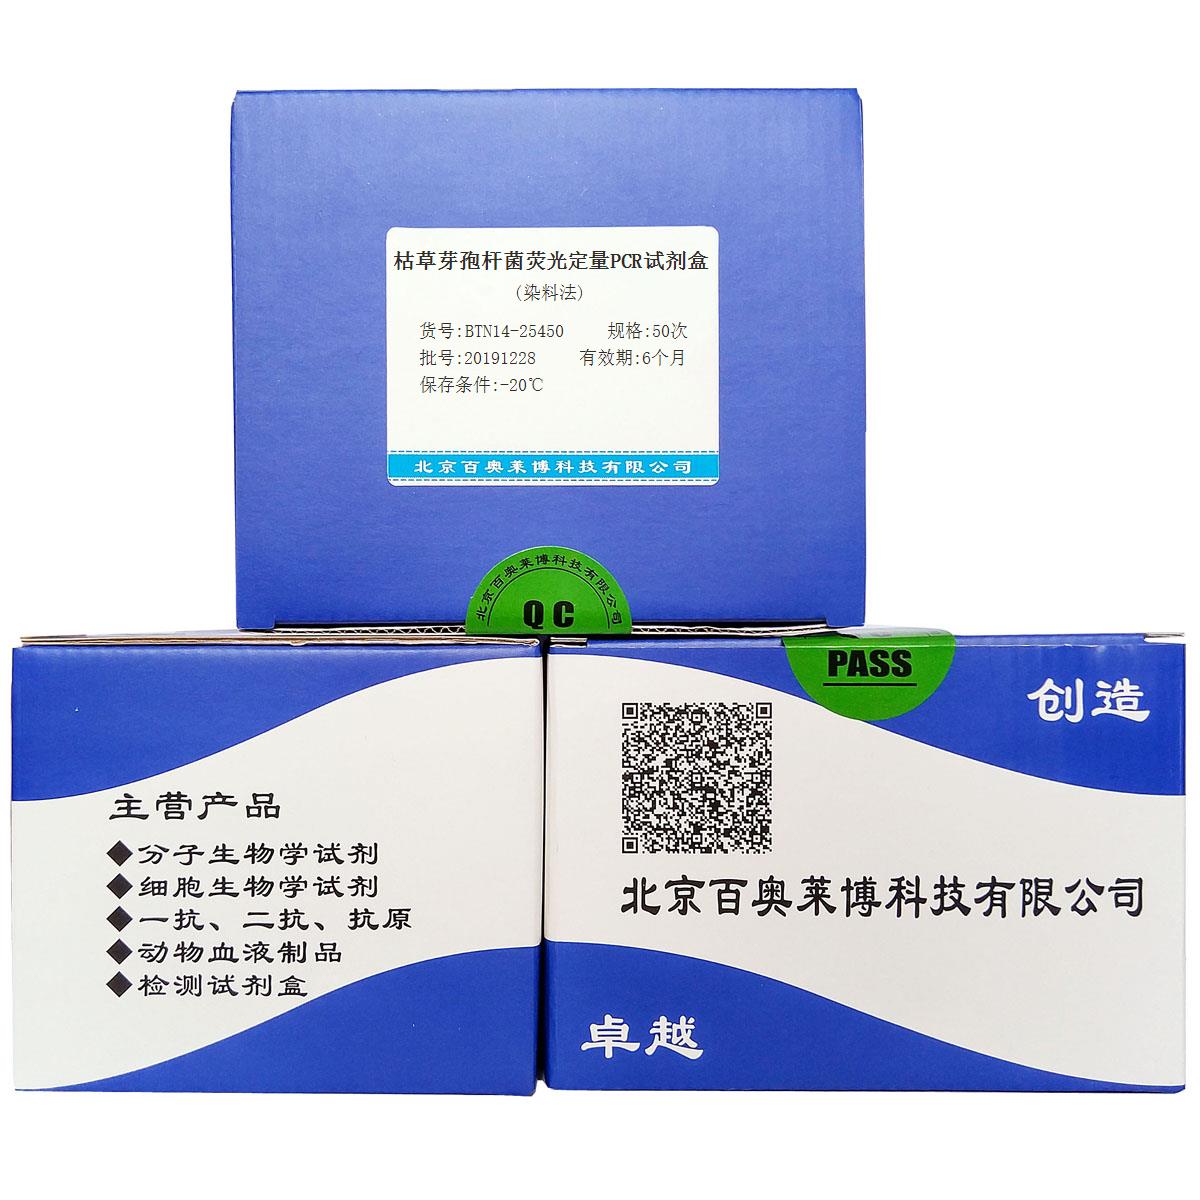 枯草芽孢杆菌荧光定量PCR试剂盒(染料法)